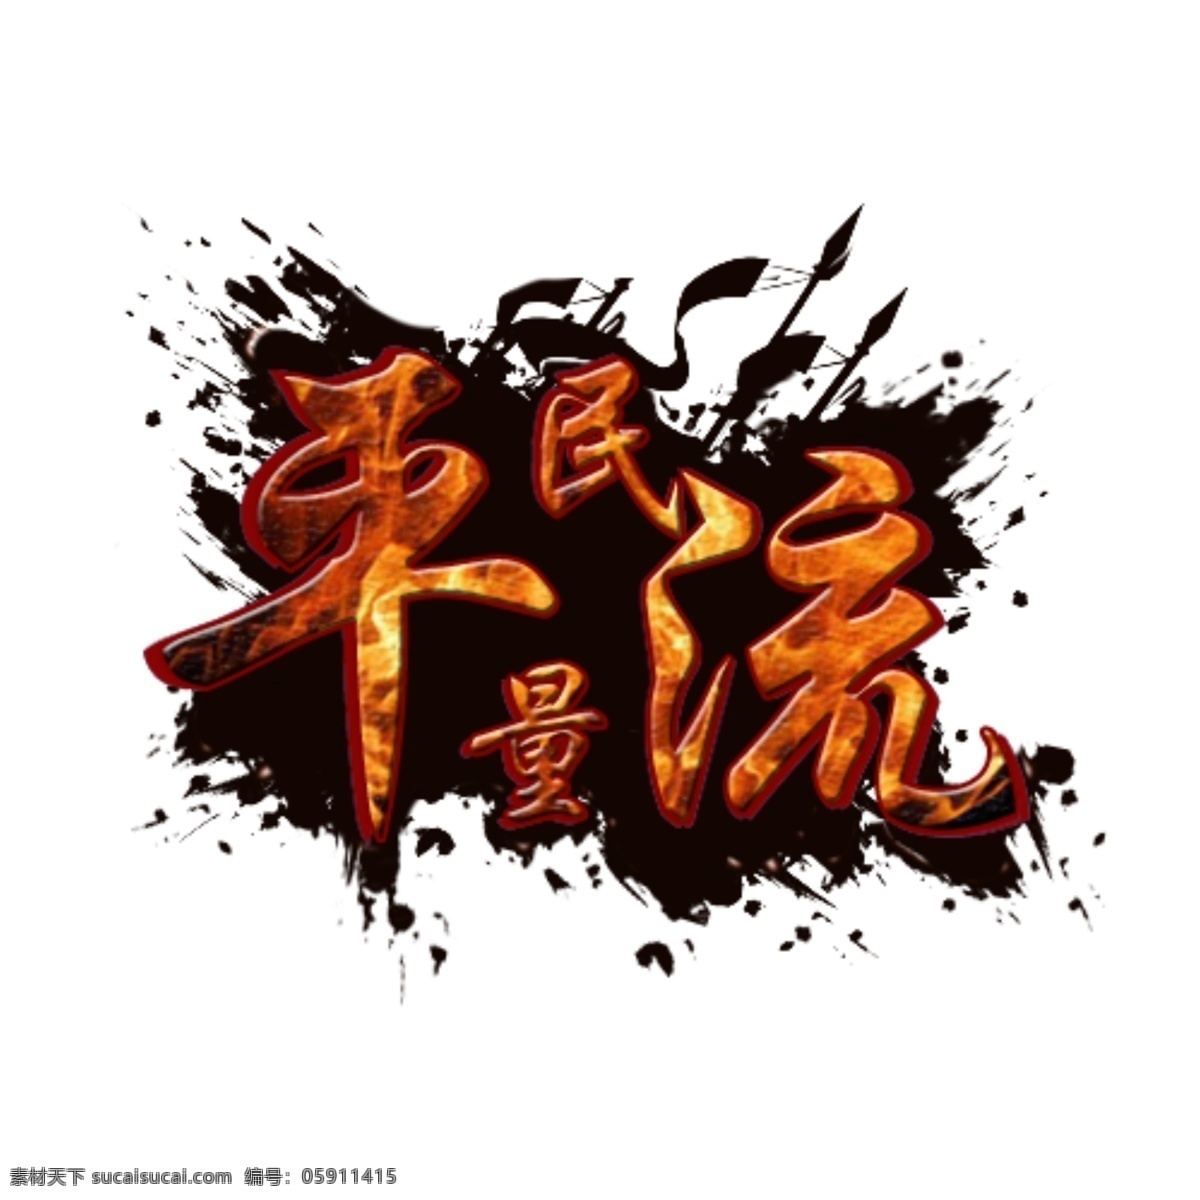 流量logo 霸气logo 红红火火